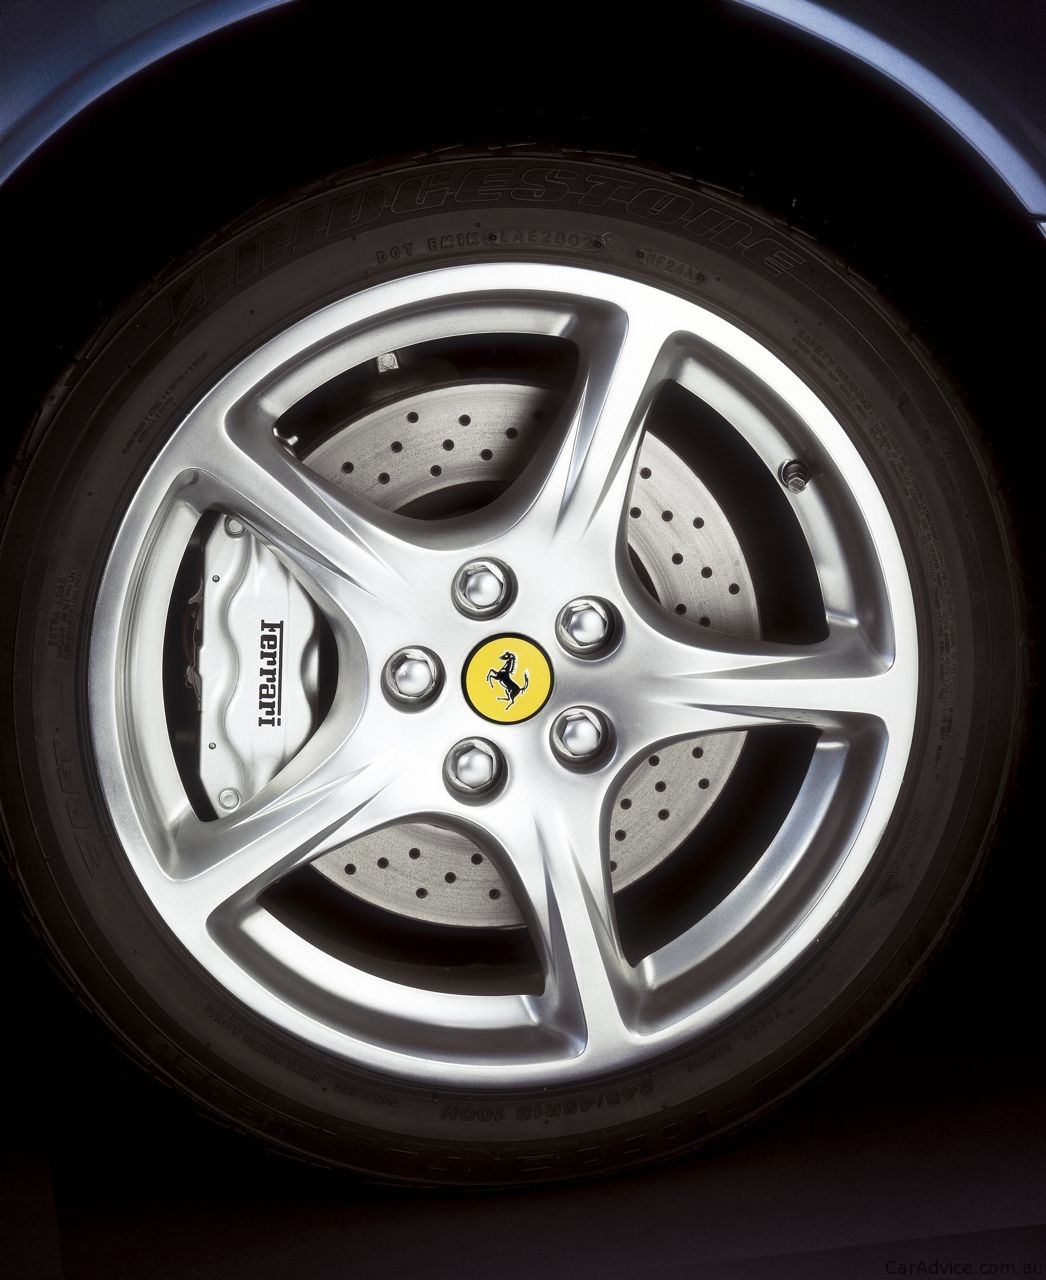 Ferrari 612 Scaglietti Review - Photos | CarAdvice